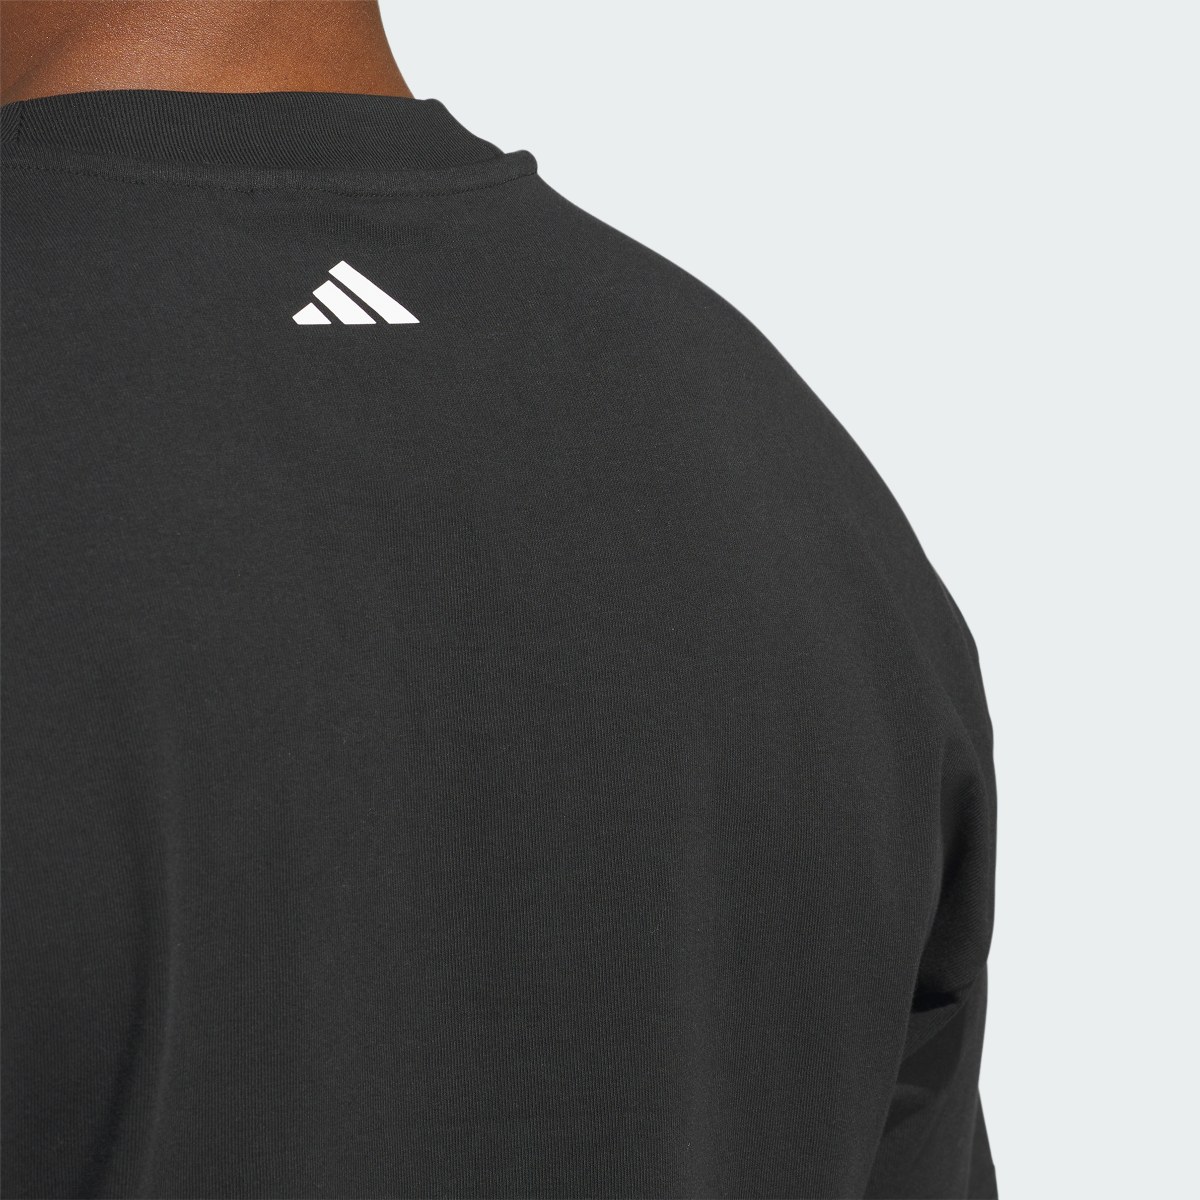 Adidas Basketball Select T-Shirt. 7